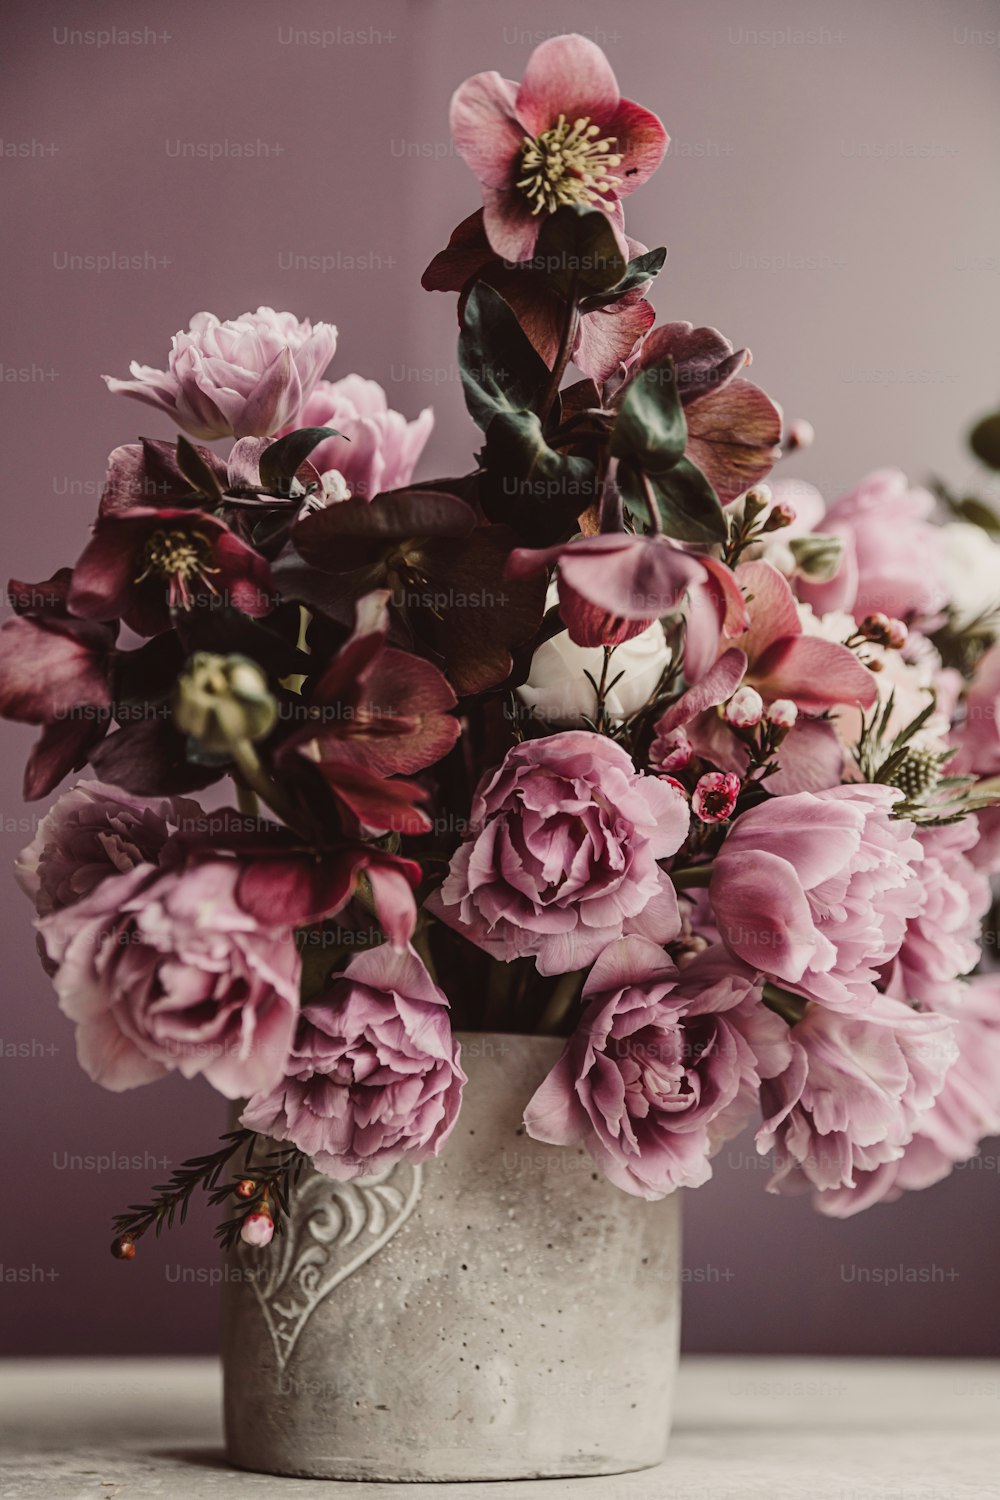 Un vase rempli de beaucoup de fleurs sur une table